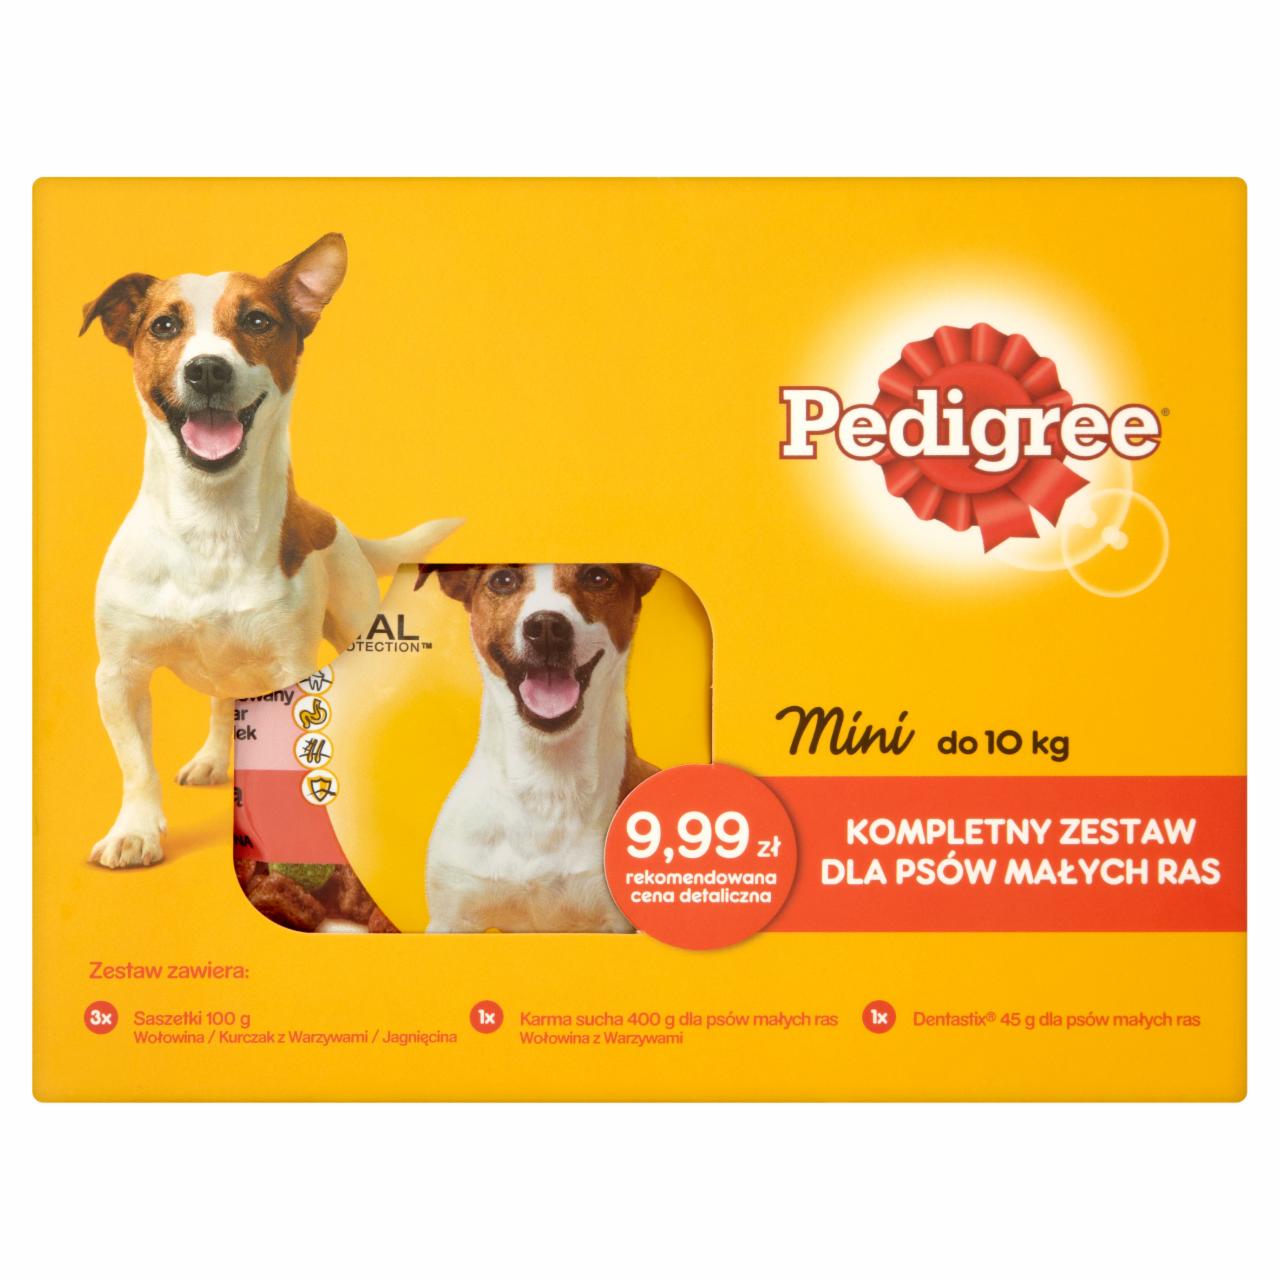 Zdjęcia - Pedigree Mini do 10 kg Kompletny zestaw dla psów małych ras